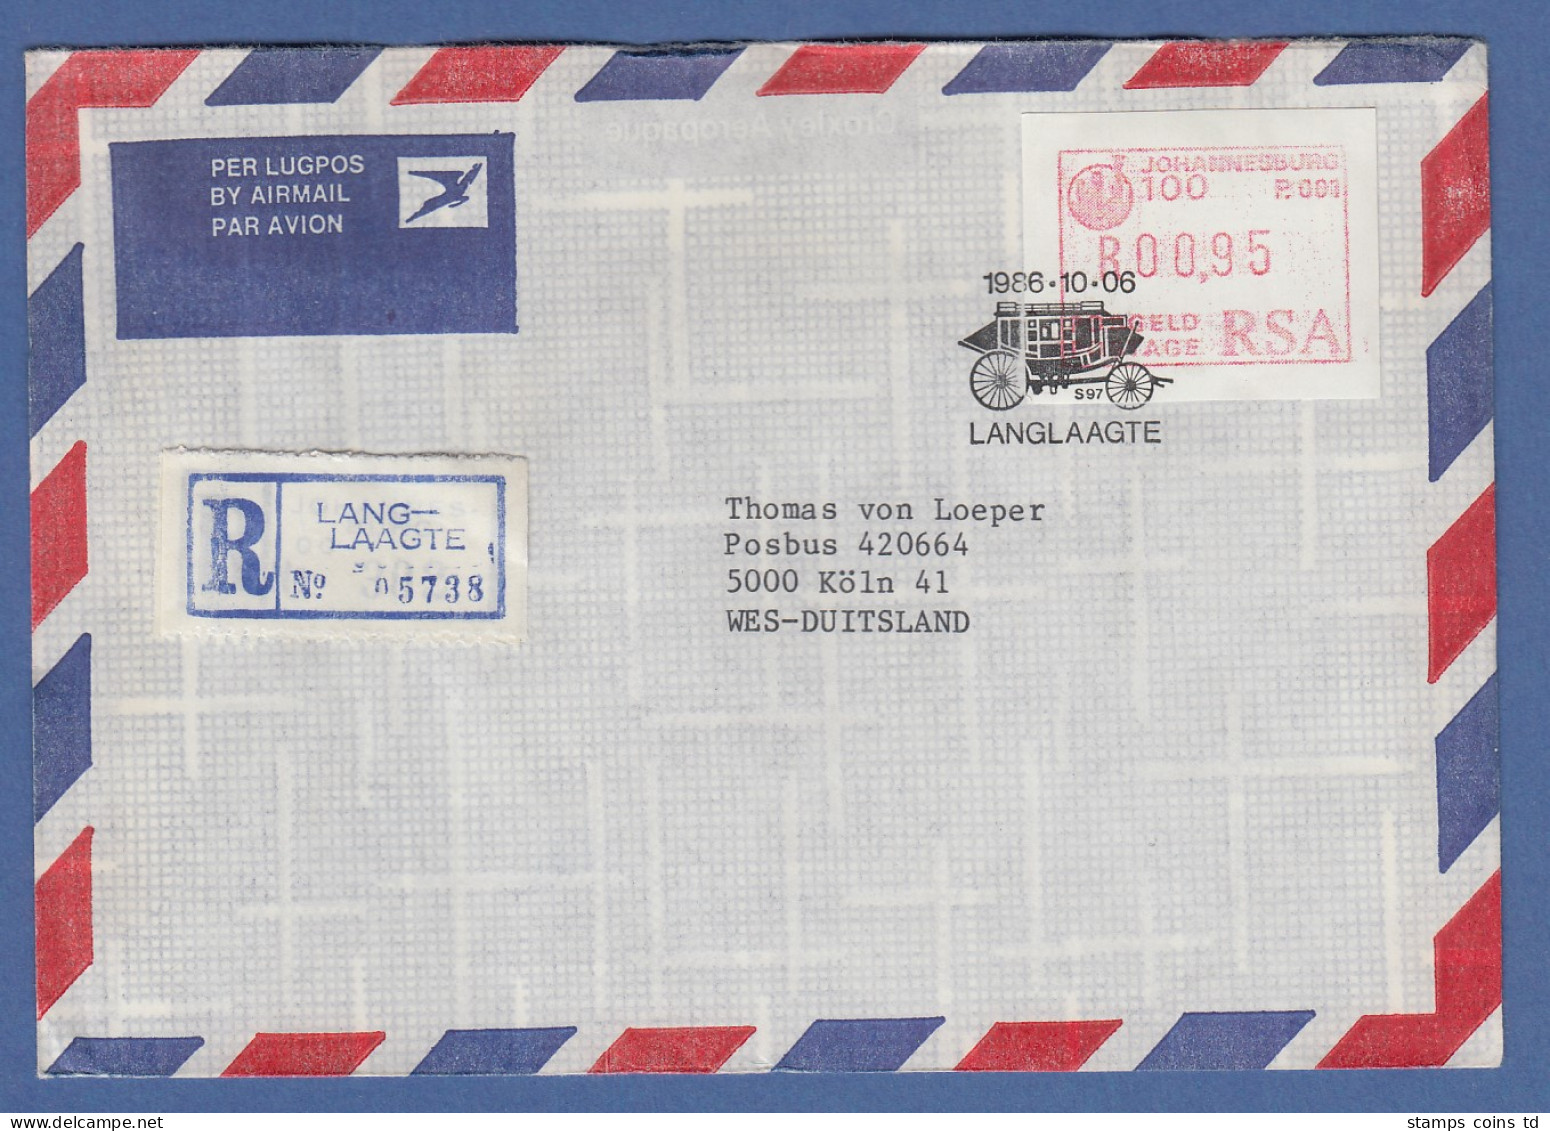 RSA 1986 Sonder-ATM Johannesburg Mi.-Nr 2 Hoher Wert 0,95 A. Auslands-R-Brief - Frankeervignetten (Frama)